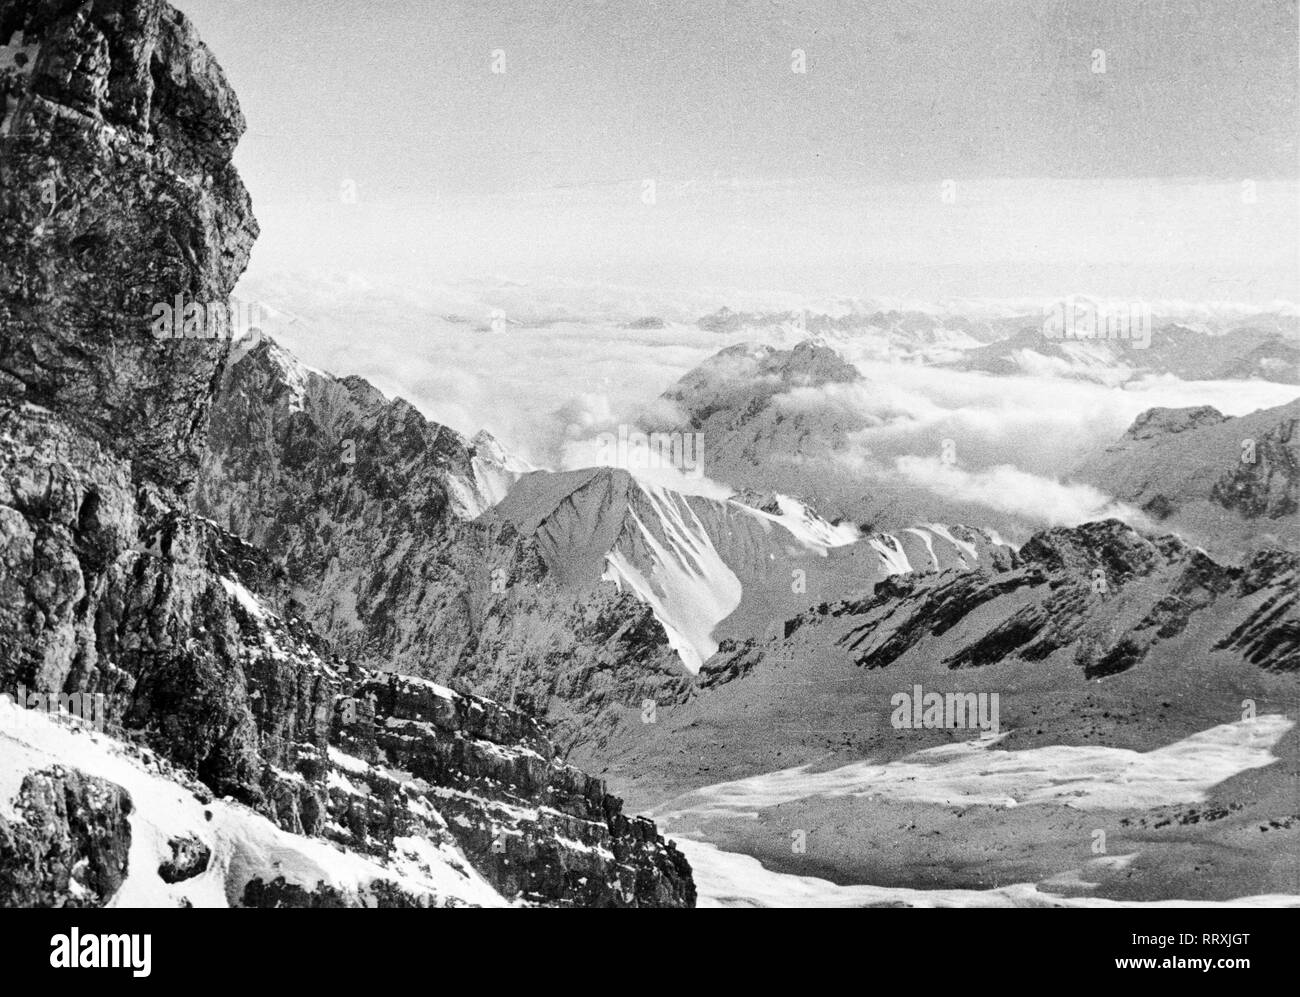 Germany - Deutsche Alpen, von der Zugspitze aus gesehen. German Alps, seen from Zugspitze peak. Stock Photo